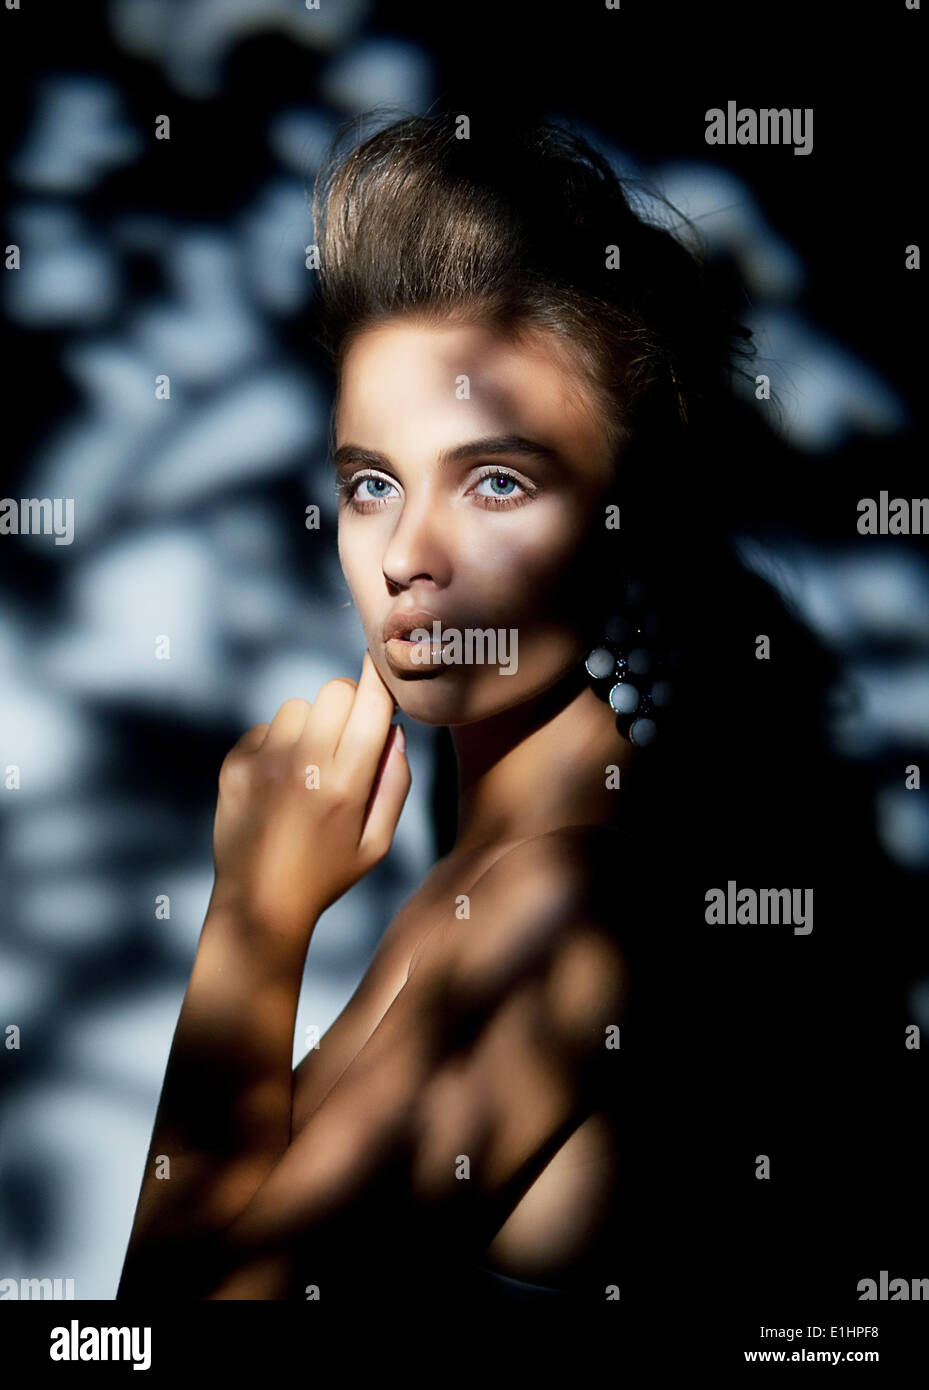 Bellissimo volto femminile in blurrs bokeh ombre blu Foto Stock